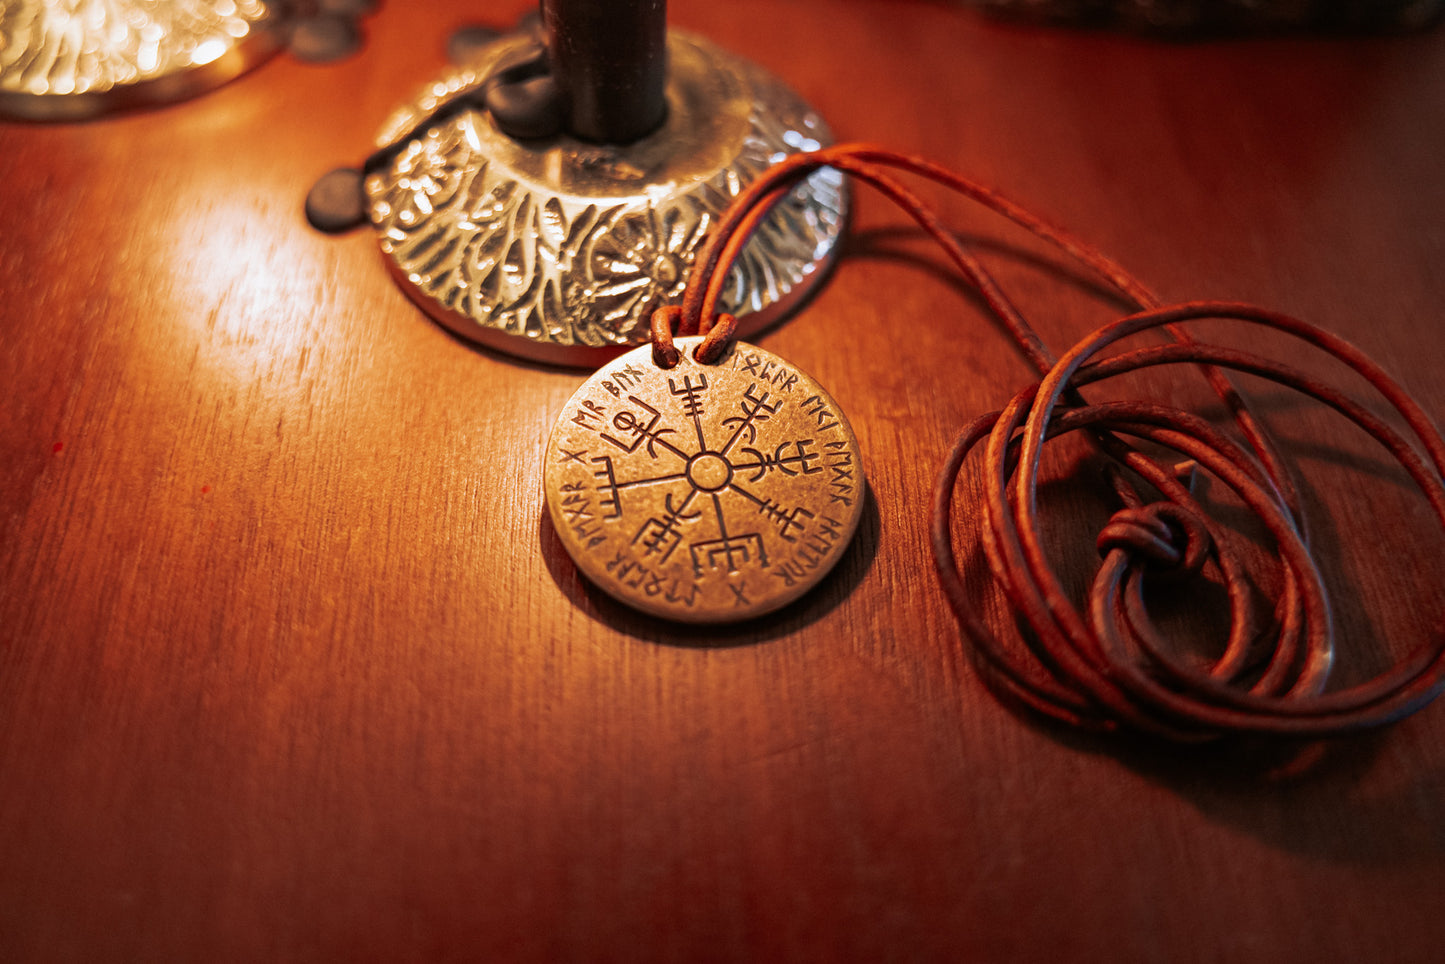 Skadi and Vegvisir Coin Necklace - Bronze